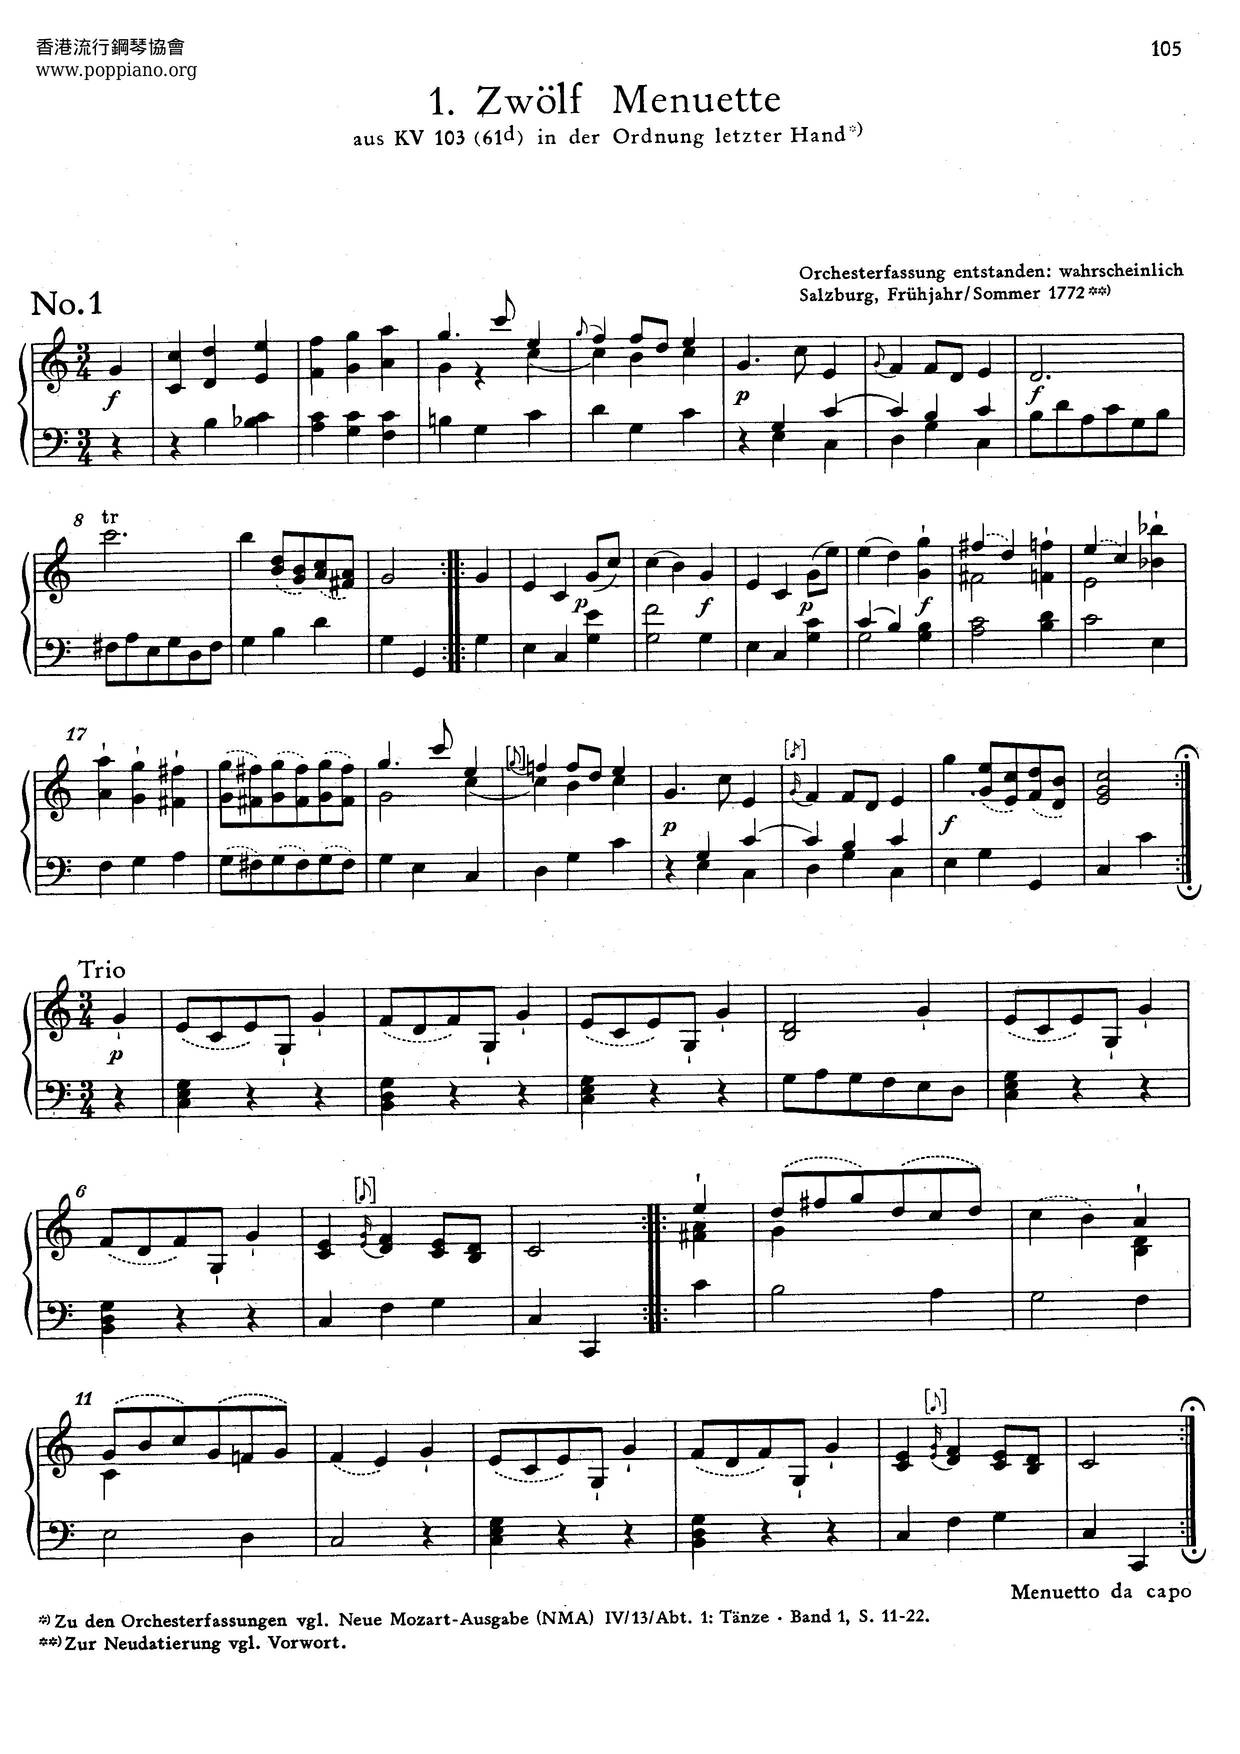 12 Minuets, K. 103/61Dピアノ譜